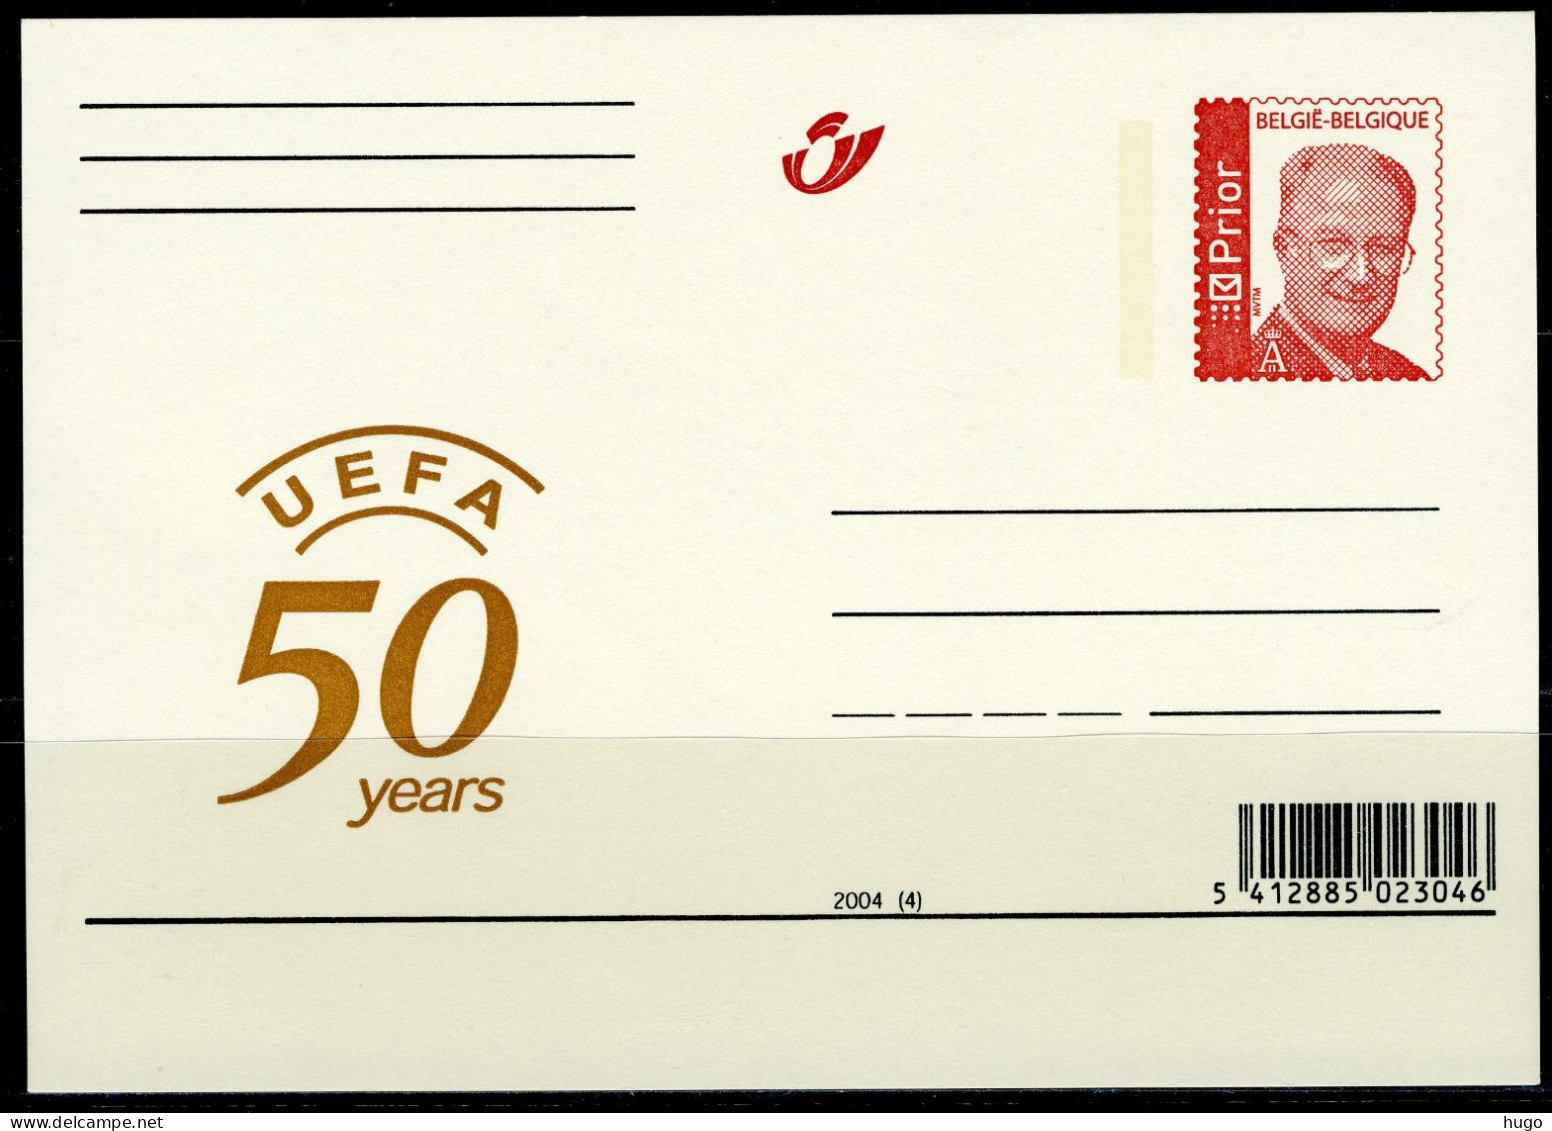 (B) België Briefkaart  2004(4) - UEFA 50 Years - Illustrated Postcards (1971-2014) [BK]